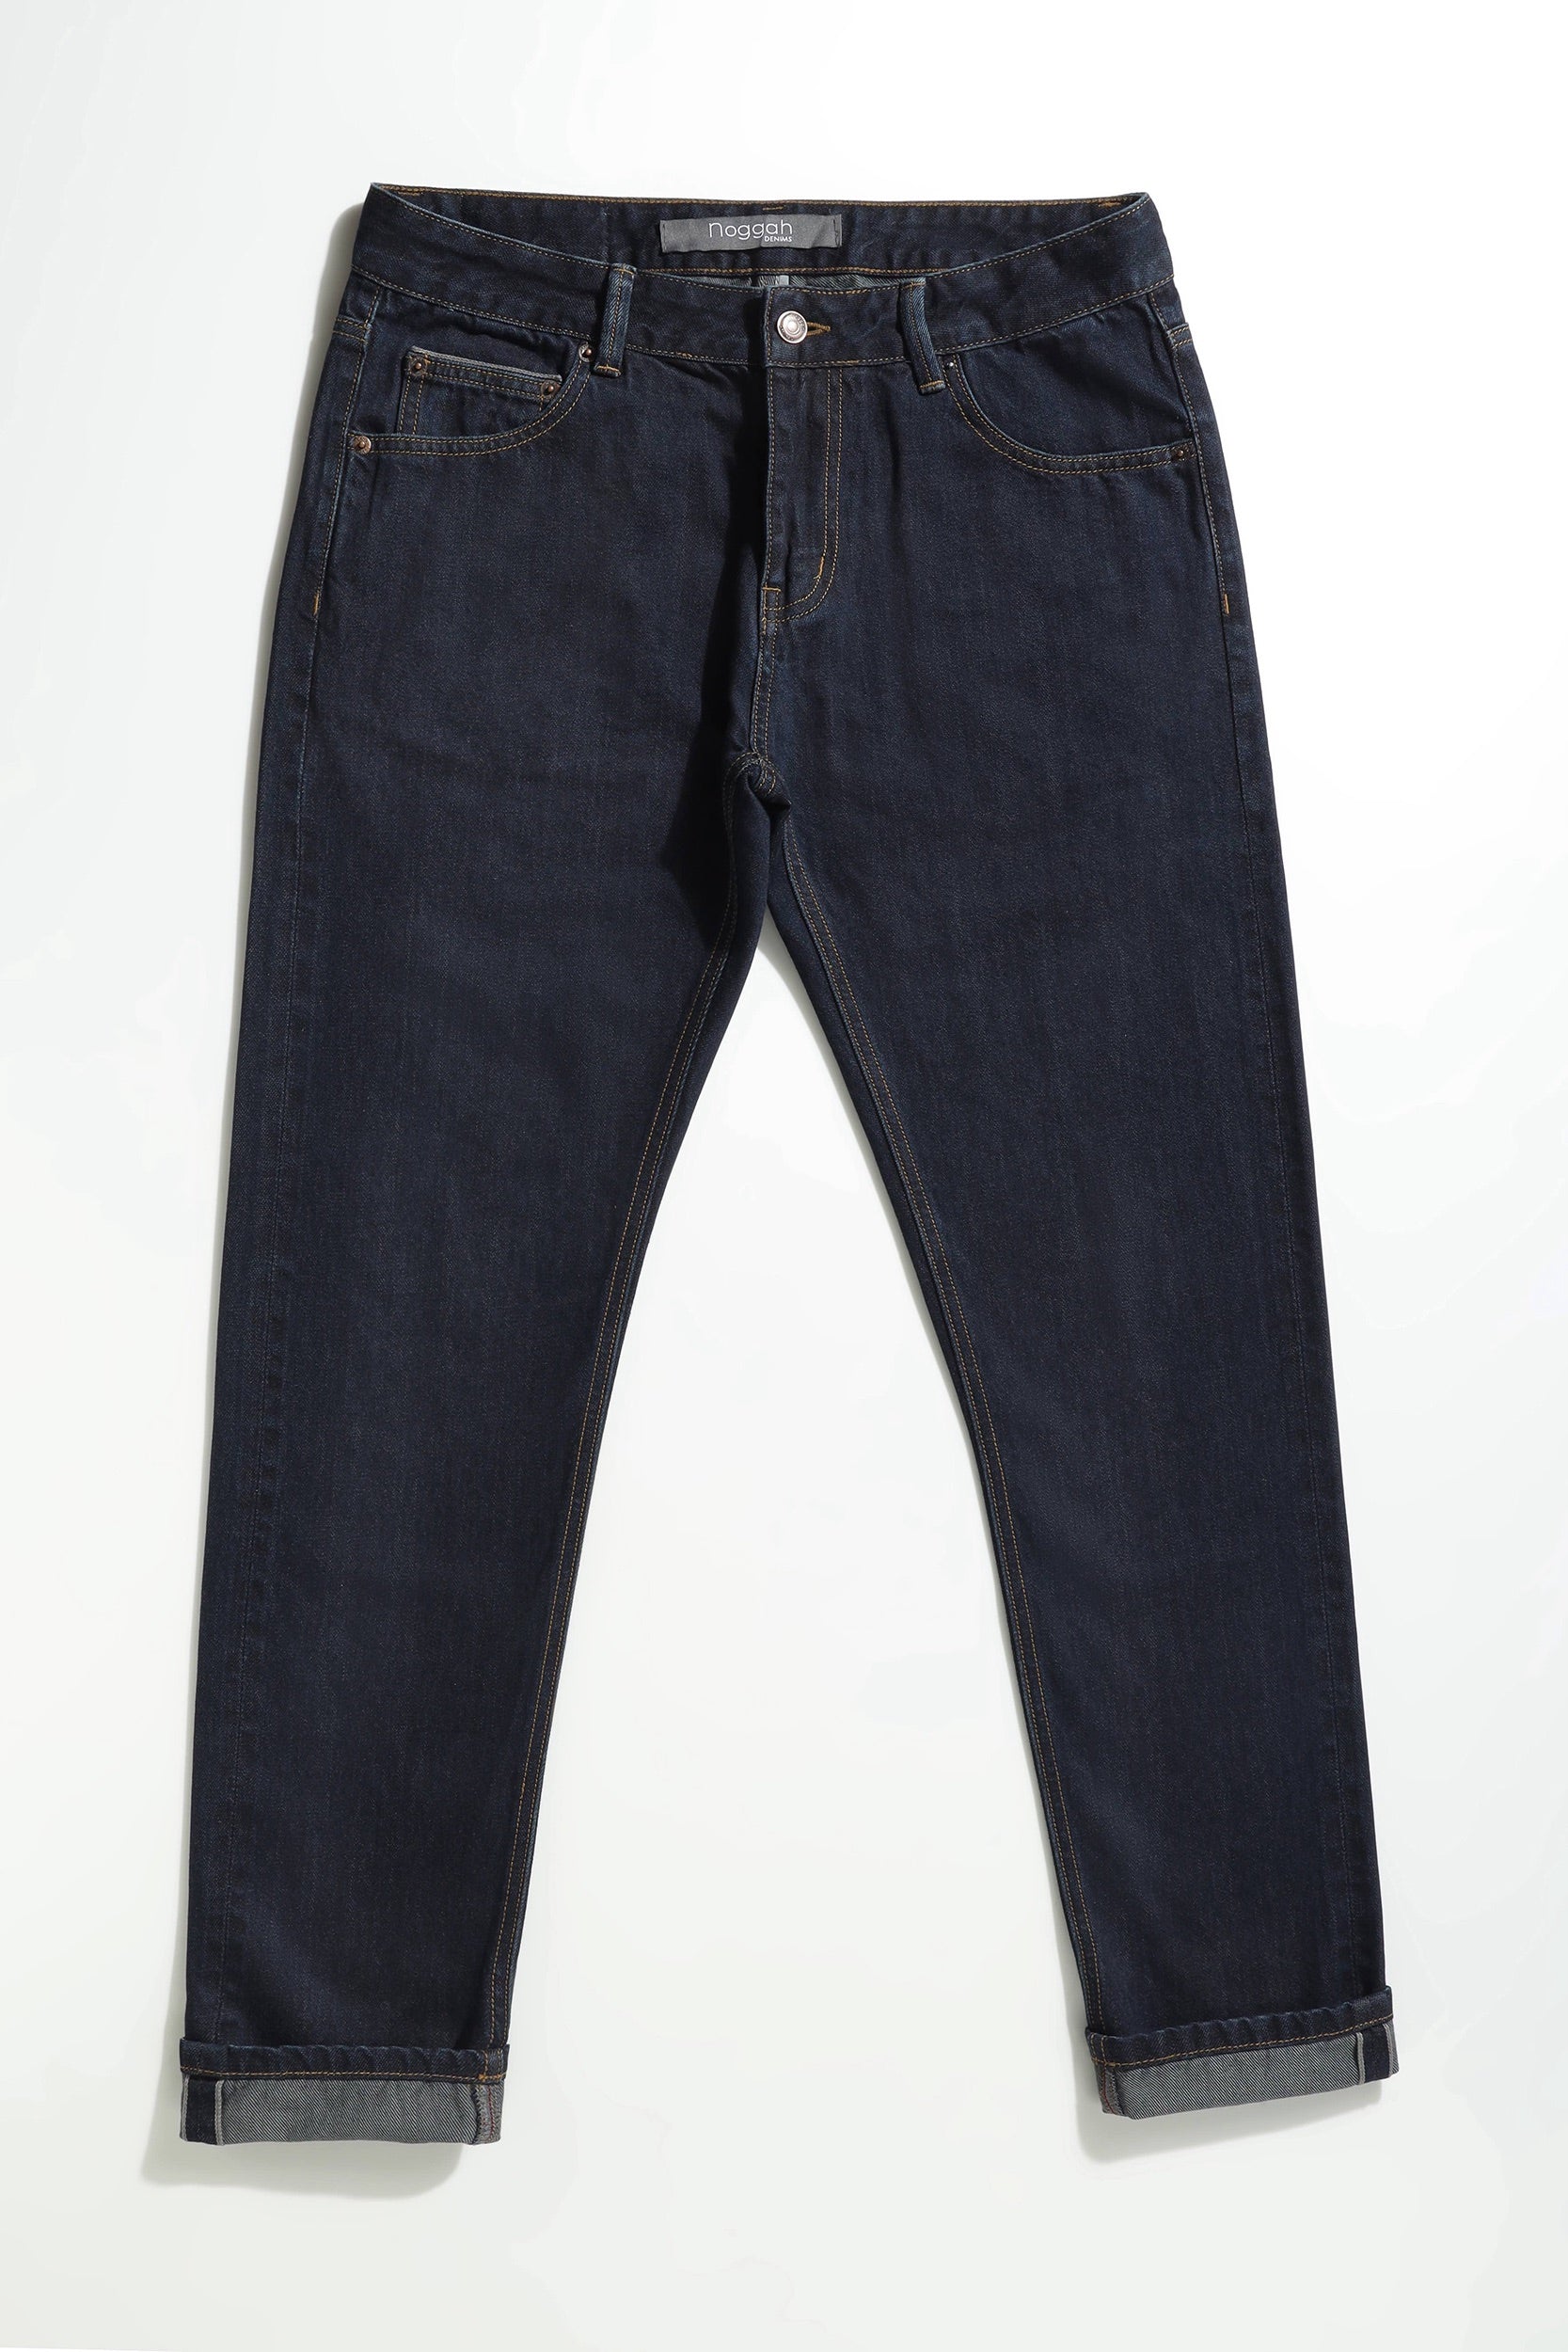 Lee Boys' Slim Fit Stretch Jeans - turf wash, 6 (Little Boys) - Walmart.com